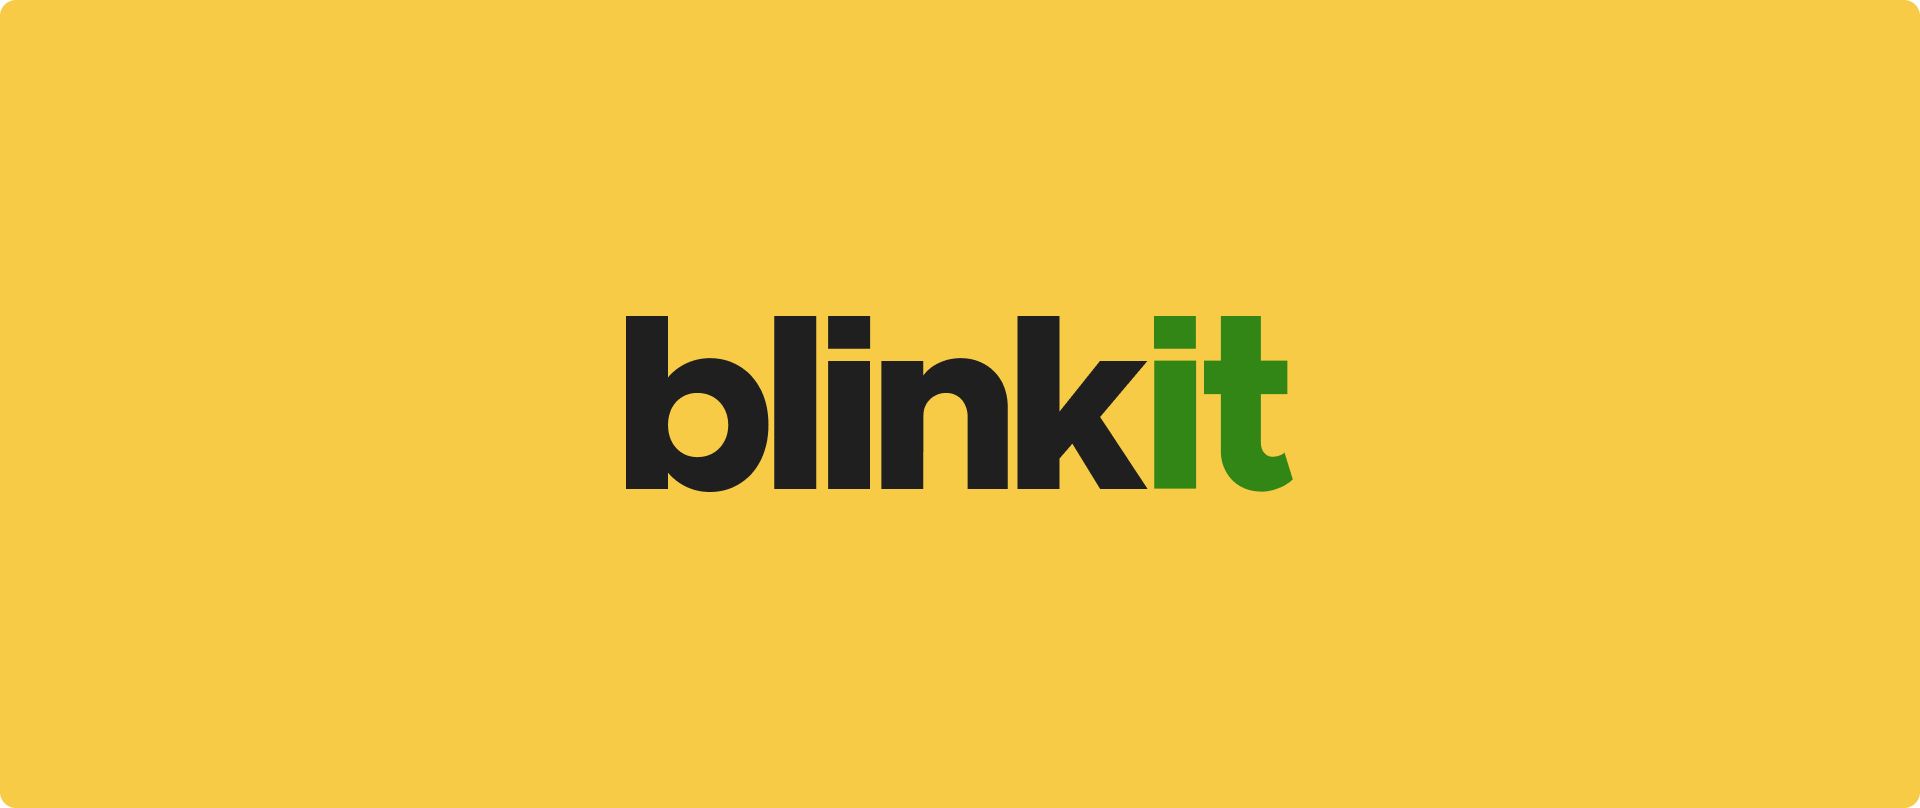 ¿Blinkit no funciona? Explore consejos para la resolución de problemas y encuentre las mejores alternativas de Blinkit para realizar compras sin problemas. ¡Vuelve a la normalidad hoy!